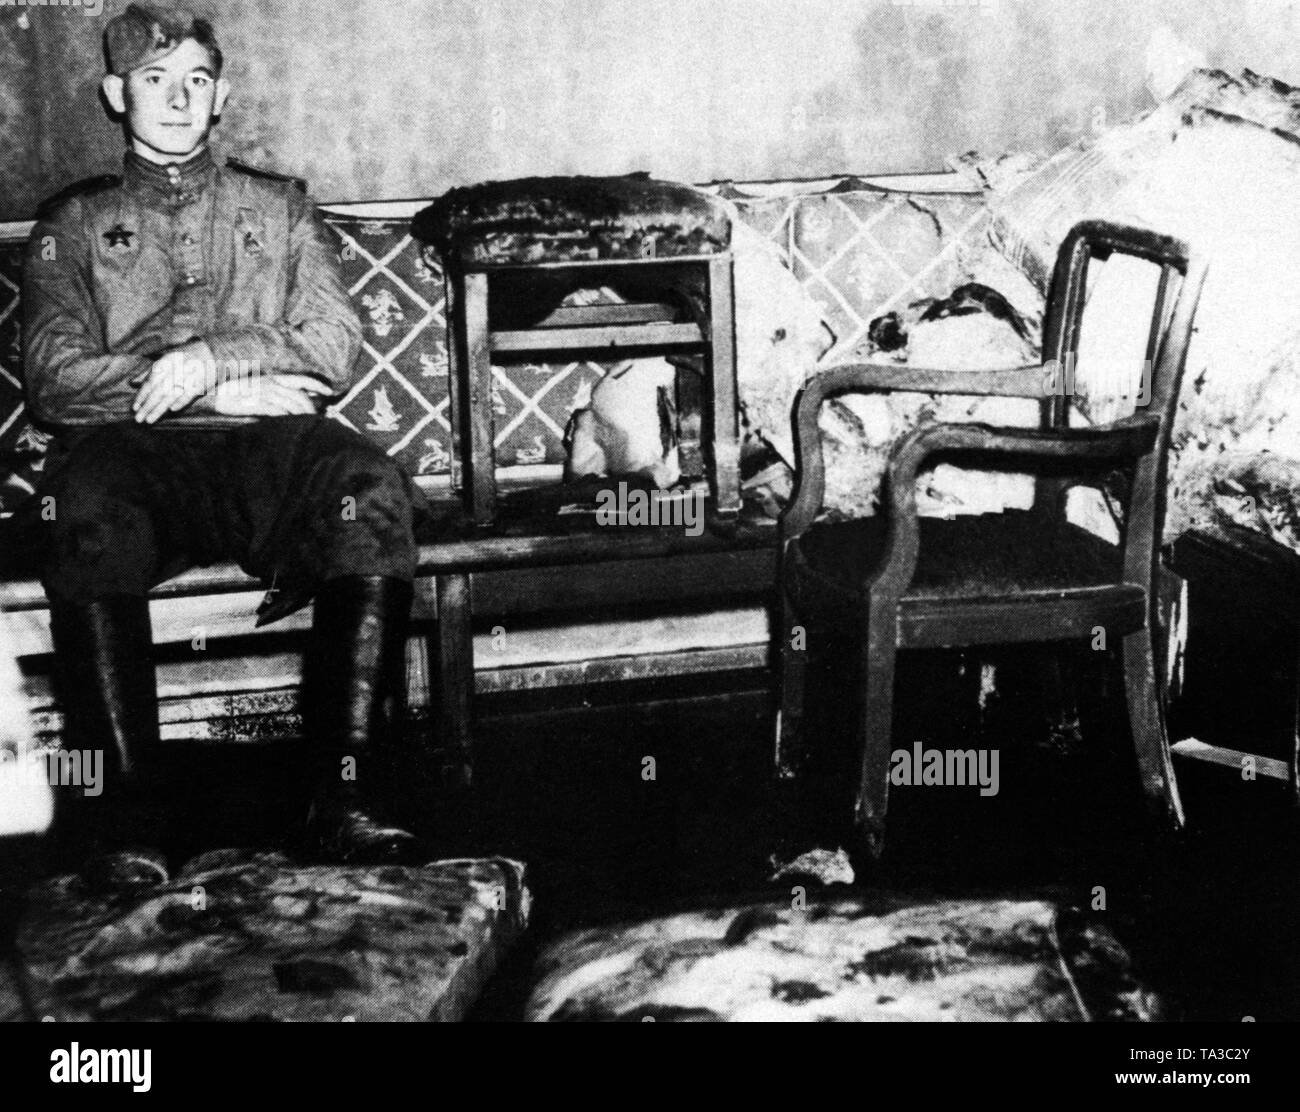 Foto di un soldato sovietico prese da un americano nel 'Fuehrerbunker', poco dopo la presa della Cancelleria del Reich dalle truppe sovietiche. Il soldato che indossa l'Ordine della Stella Rossa (decorazione militare) sul suo torace destro e si siede sul divano in camera, dove Hitler ed Eva Braun ha preso la propria vita. Foto Stock